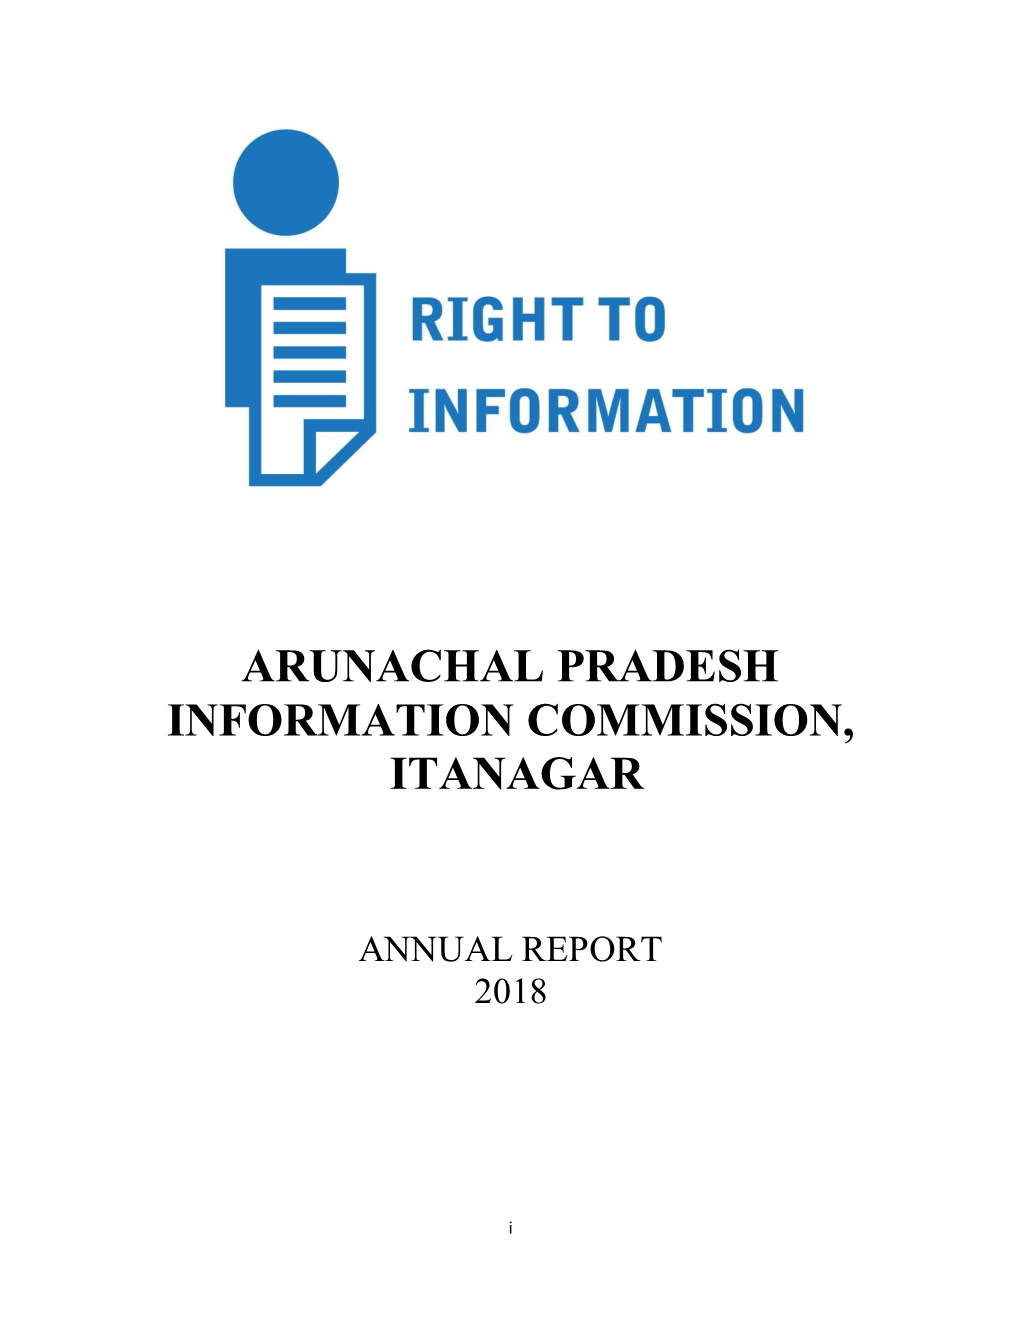 Arunachal Pradesh Information Commission, Itanagar